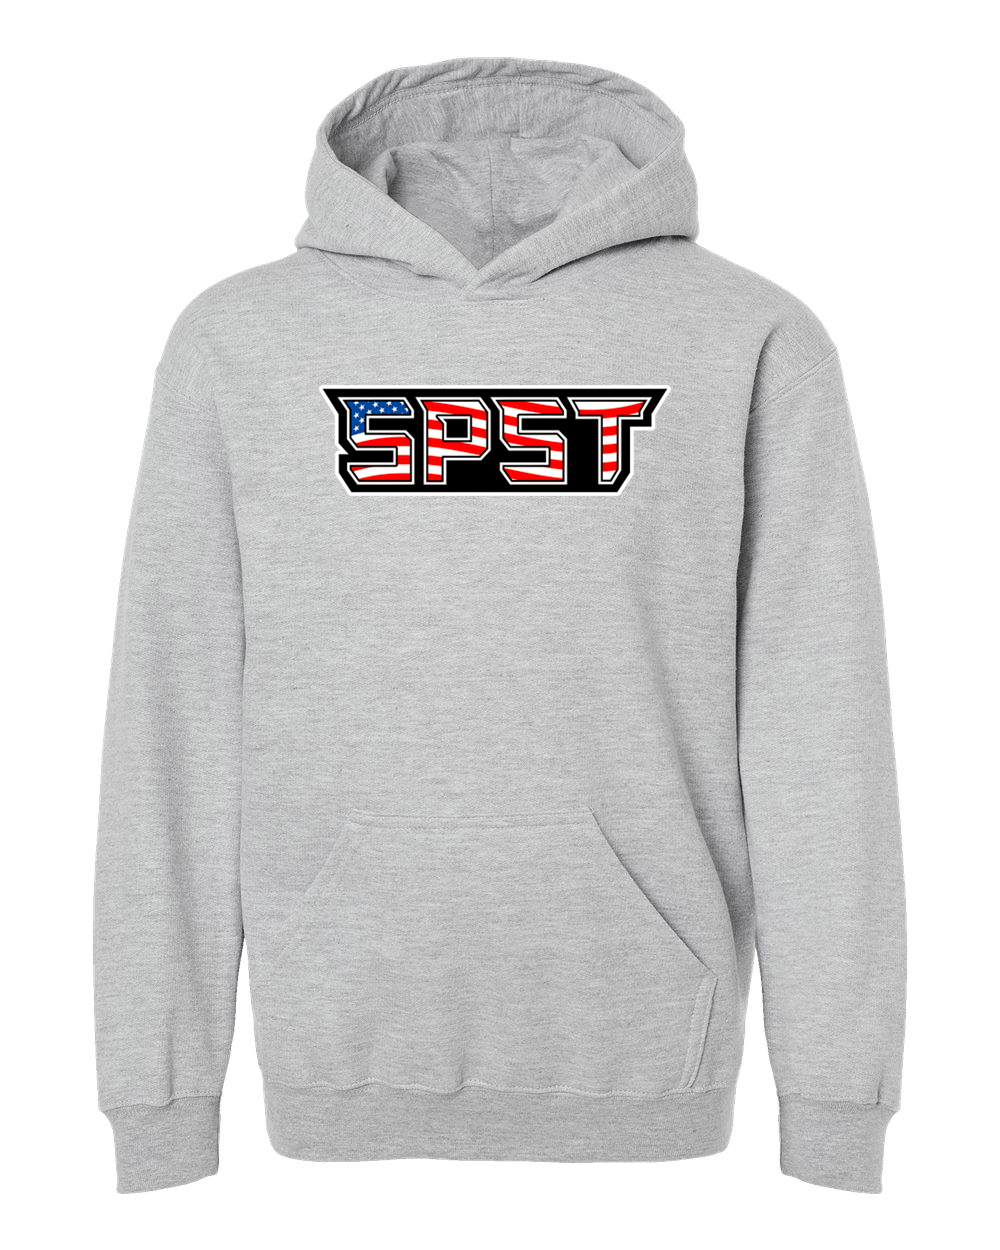 SPST Logo Youth Hooded Sweatshirt - 320Y